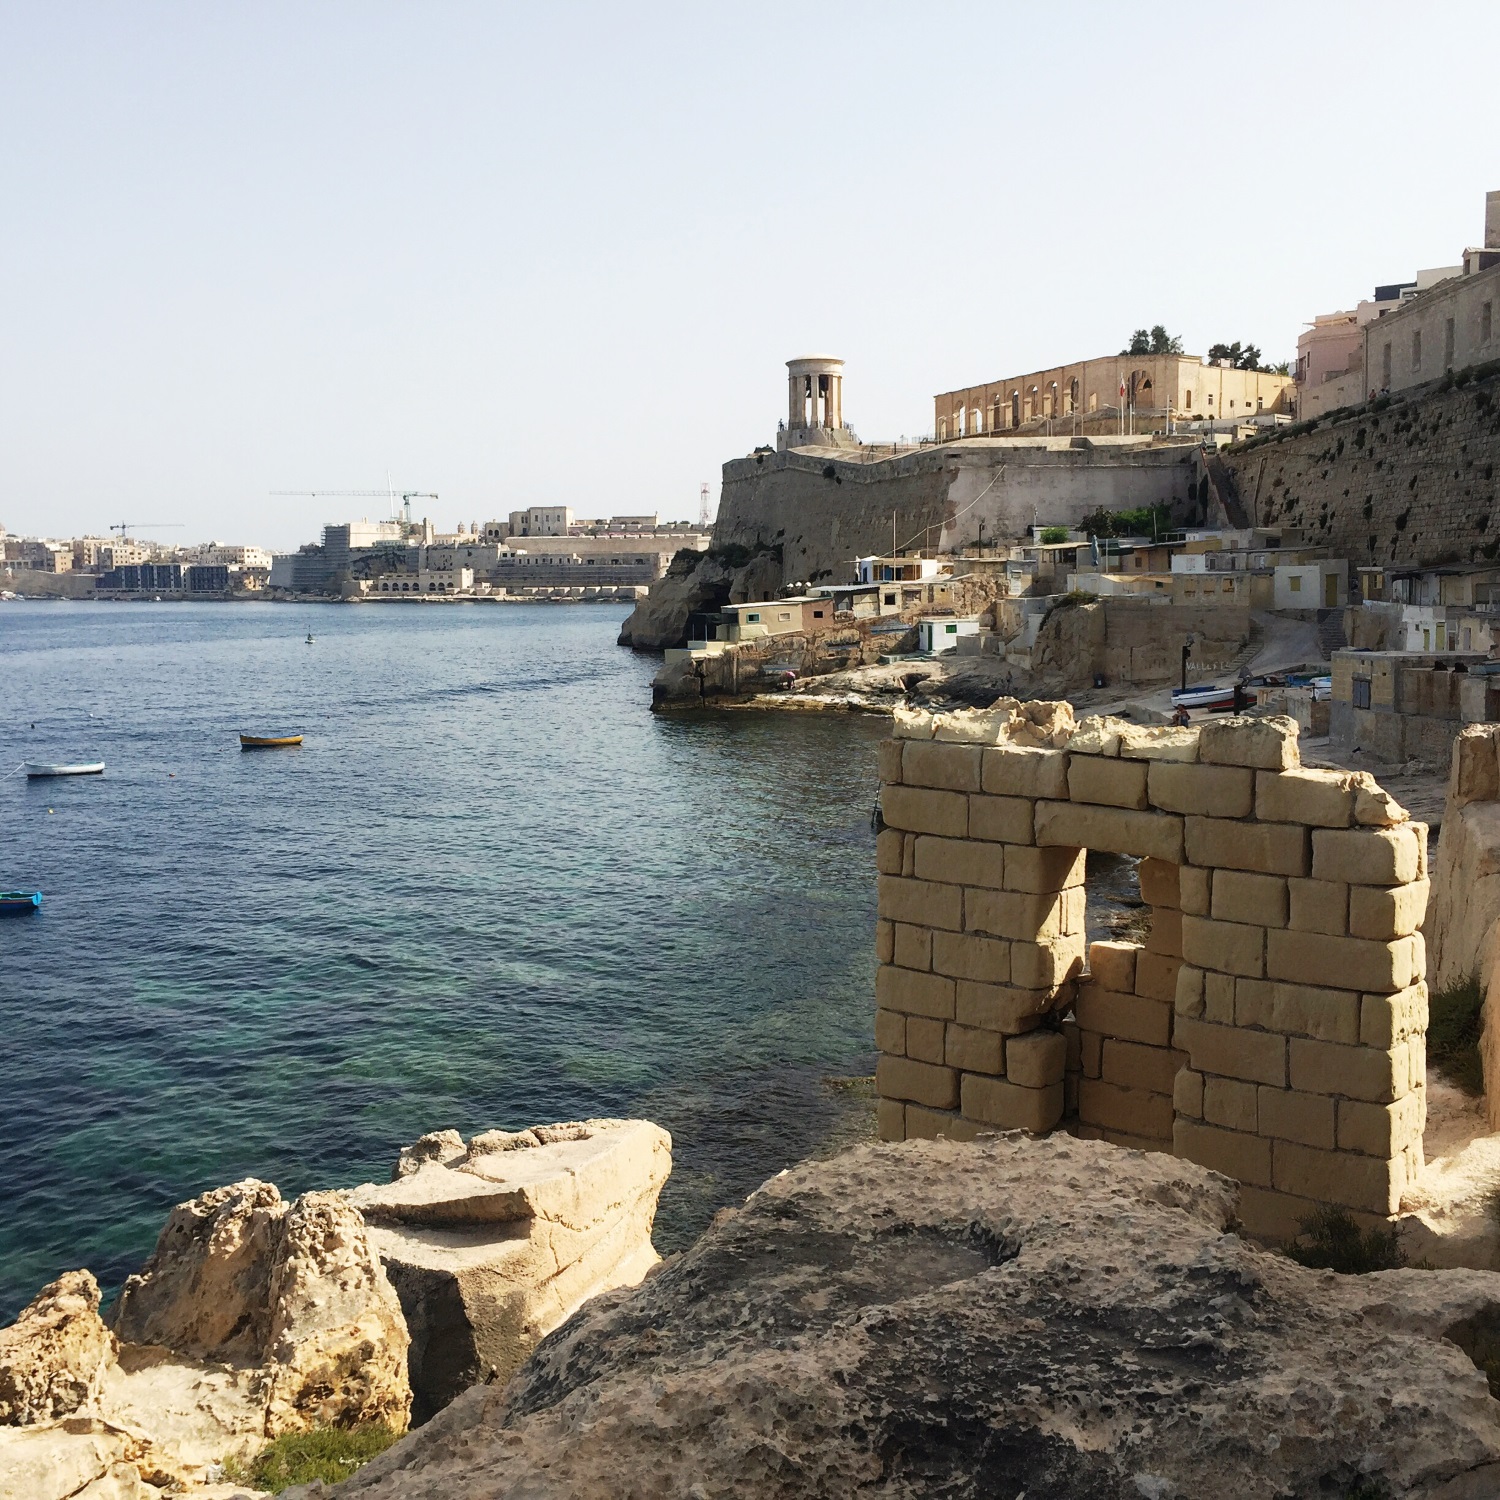 Старше Хеопса. Визит на Мальту: хорошо покушать, добраться до святилища, увидеть Караваджо и повторить путь пушечного ядра